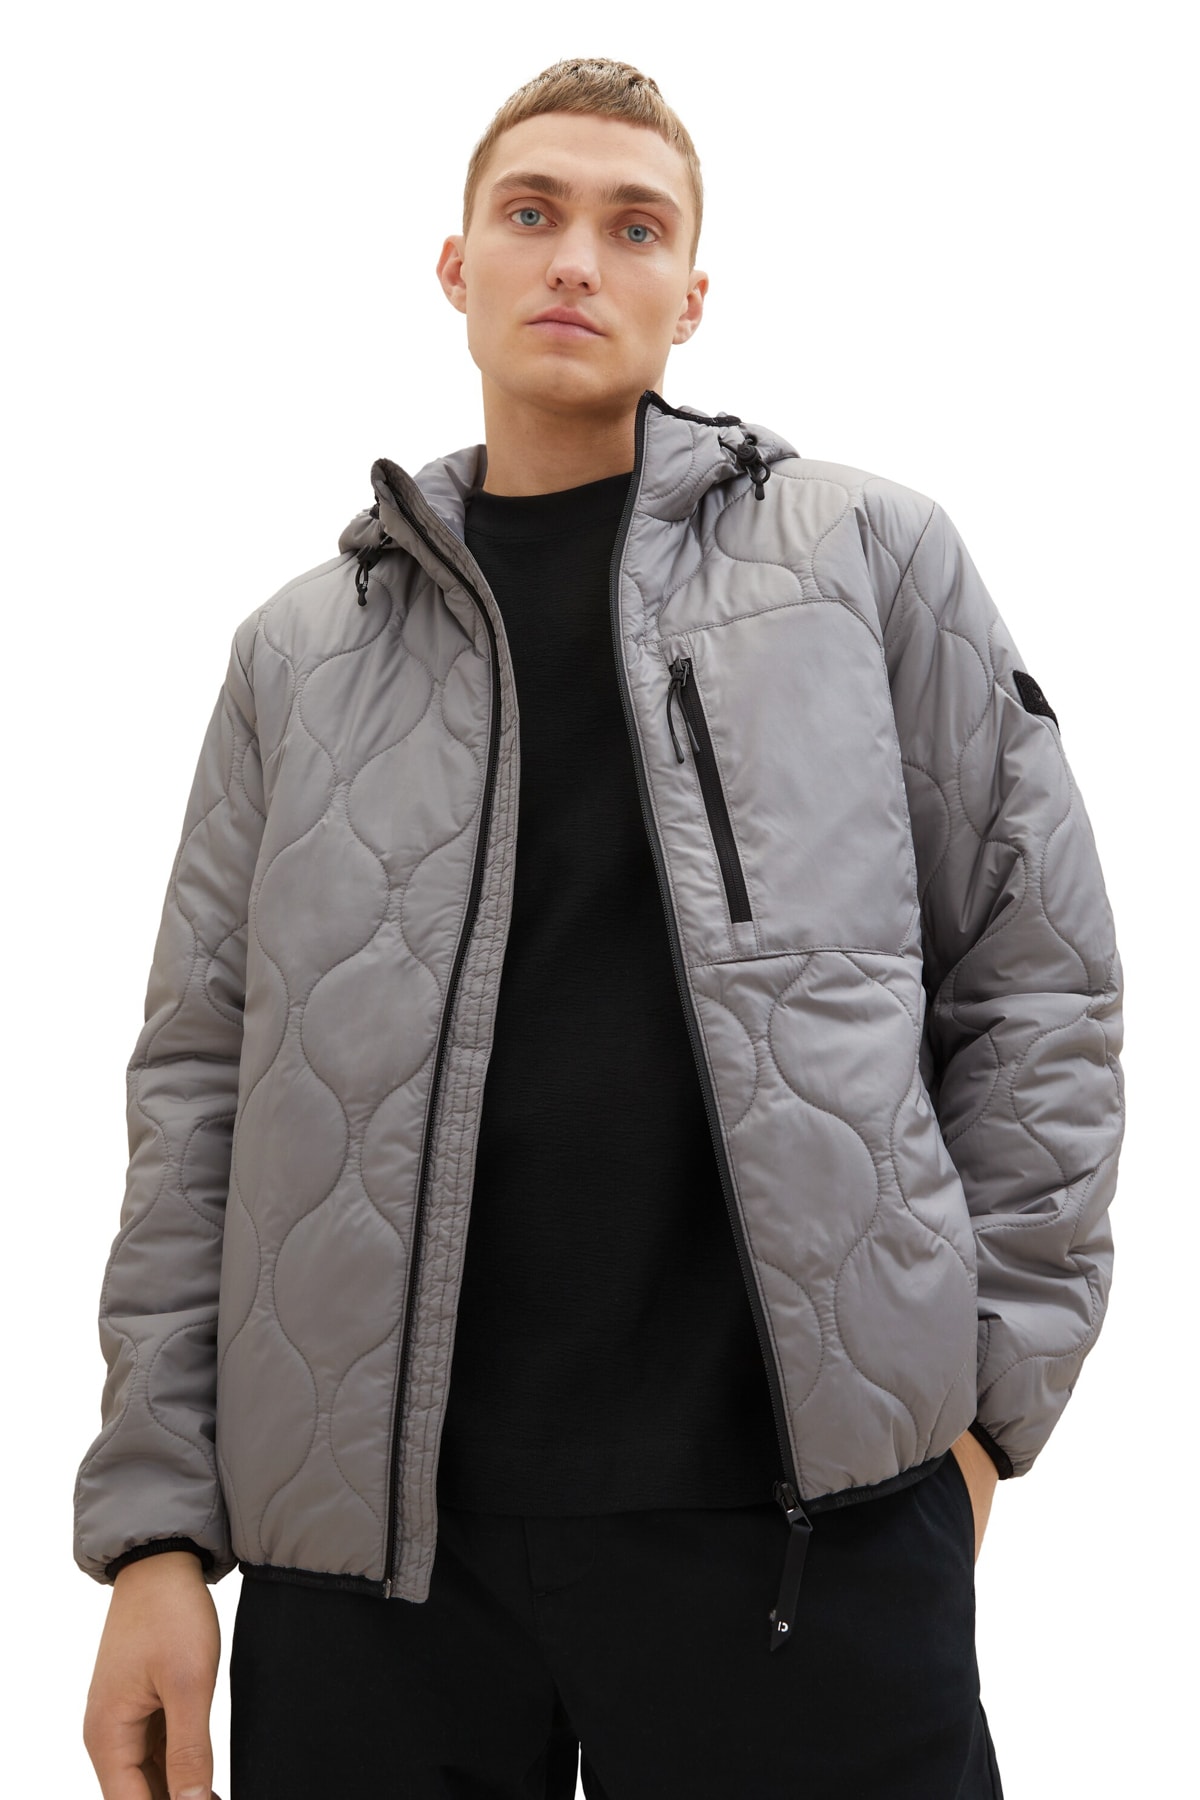 Зимняя куртка - Серая - Пуховик Tom Tailor Denim, серый толстовка tom tailor средней длины капюшон карманы размер 152 серый